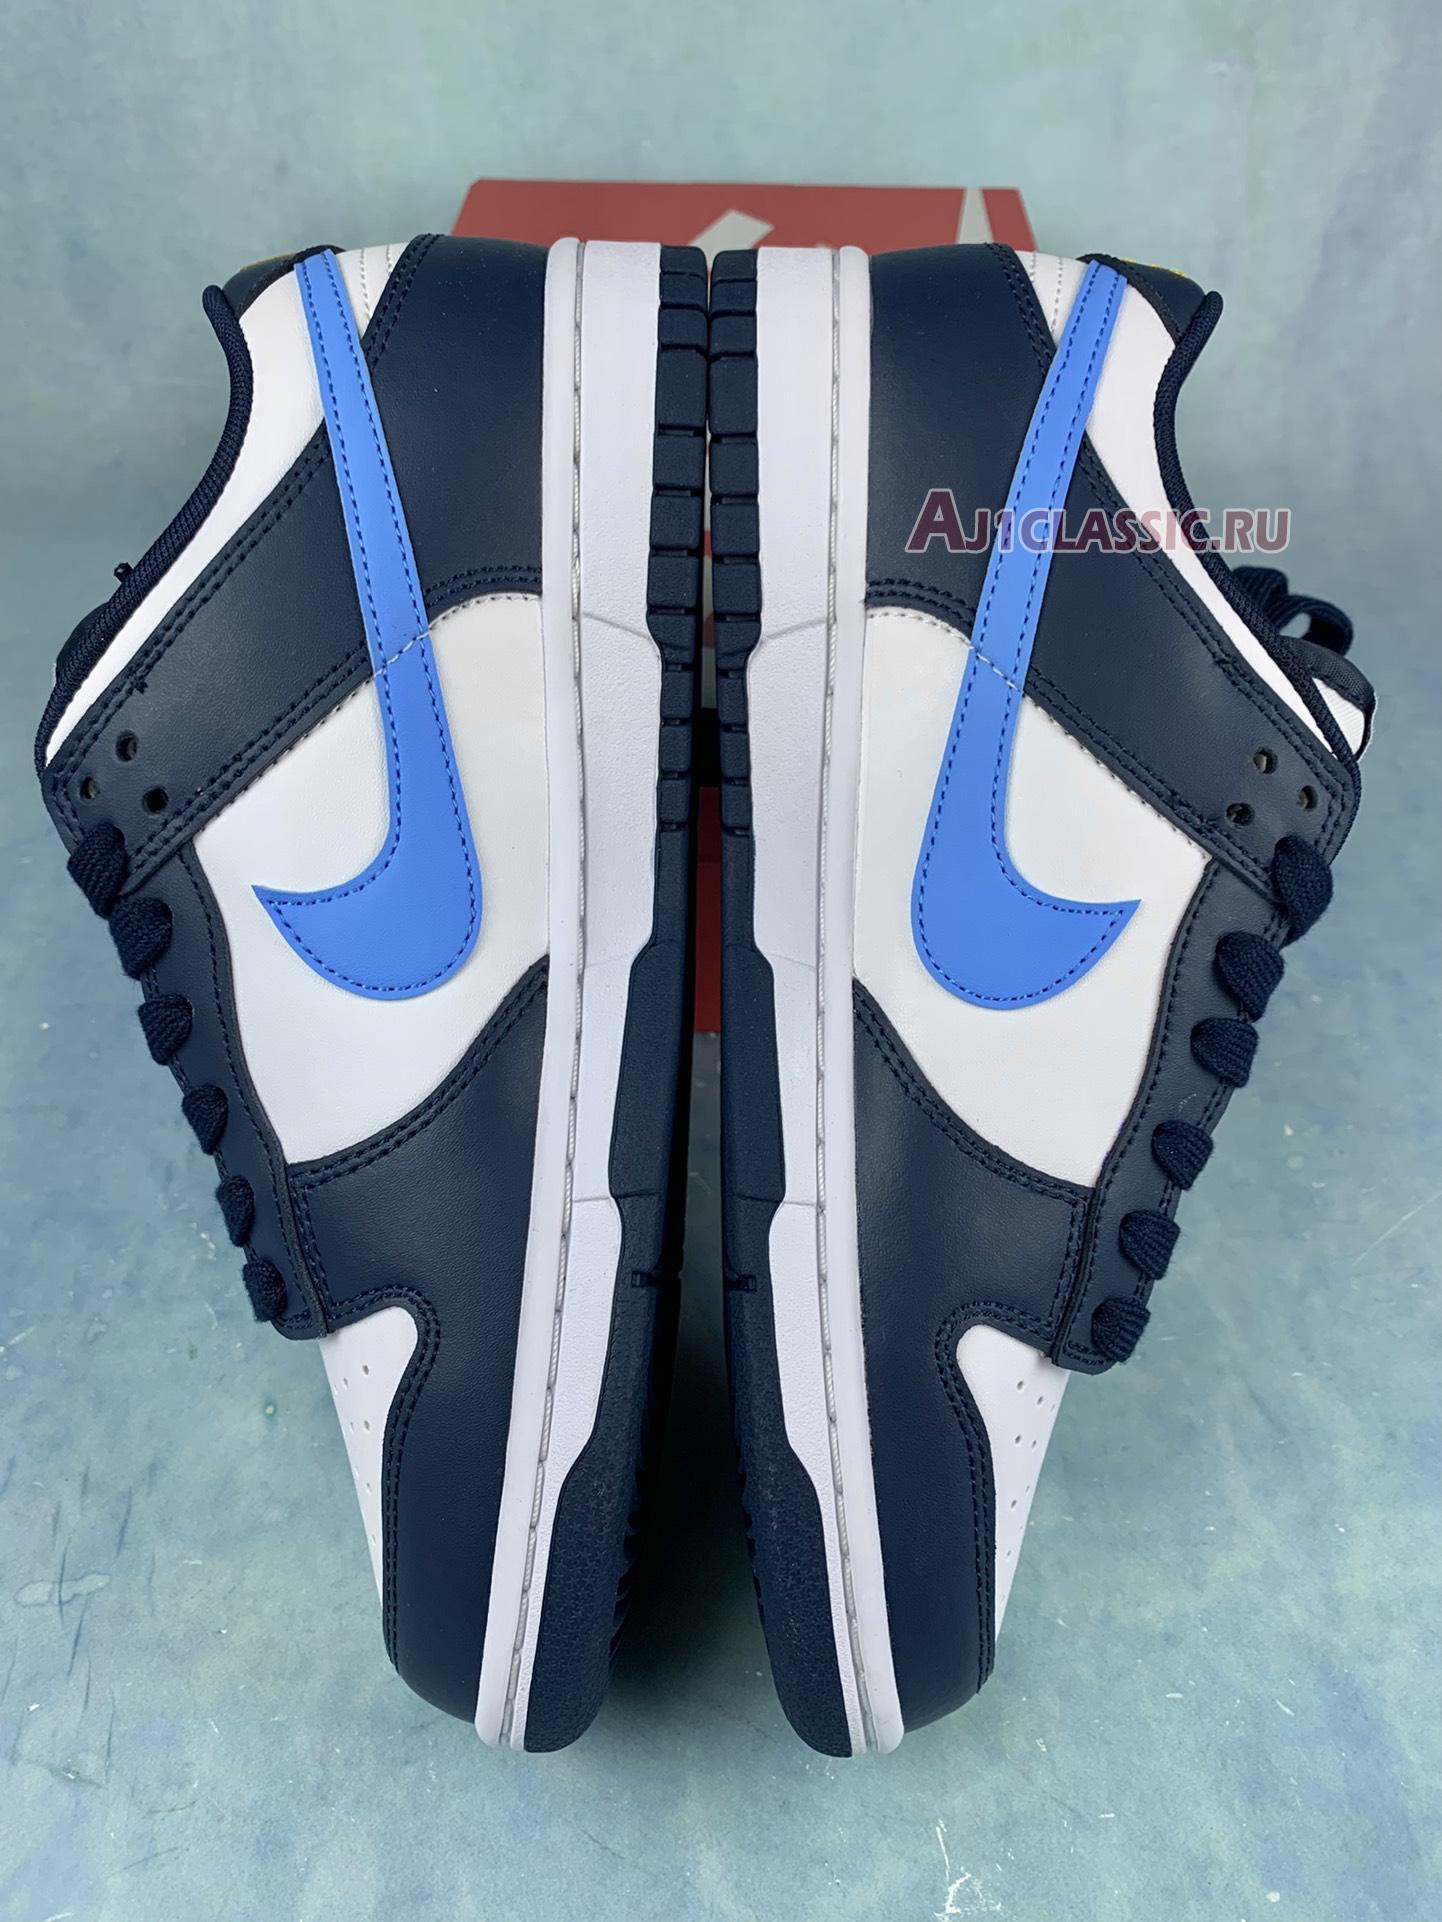 Nike Dunk Low "Obsidian University Blue" FN7800-400